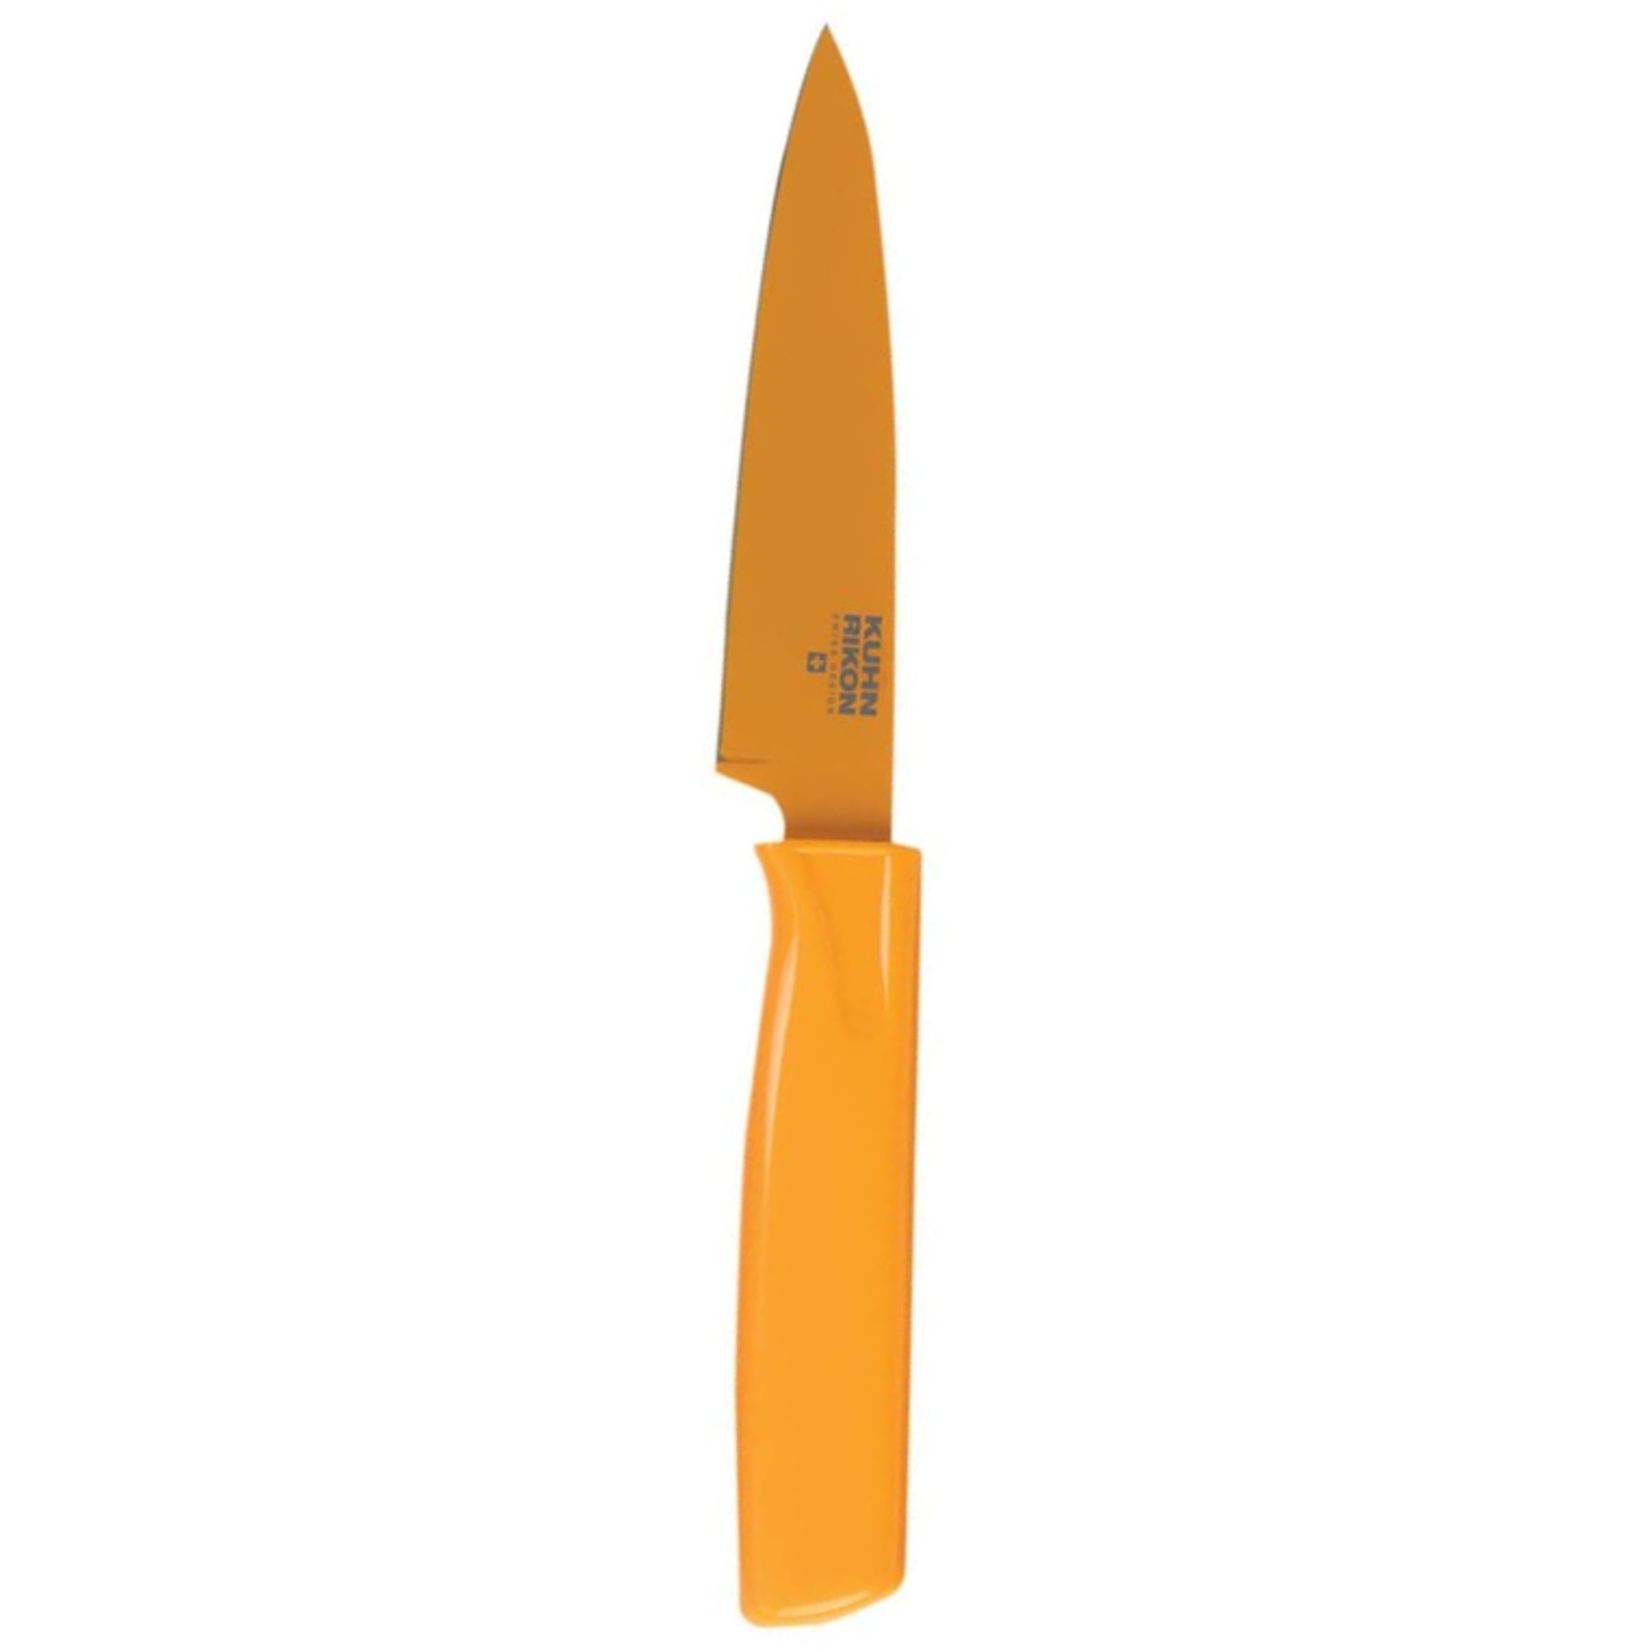 Kuhn Rikon Paring Knives, Tangerine